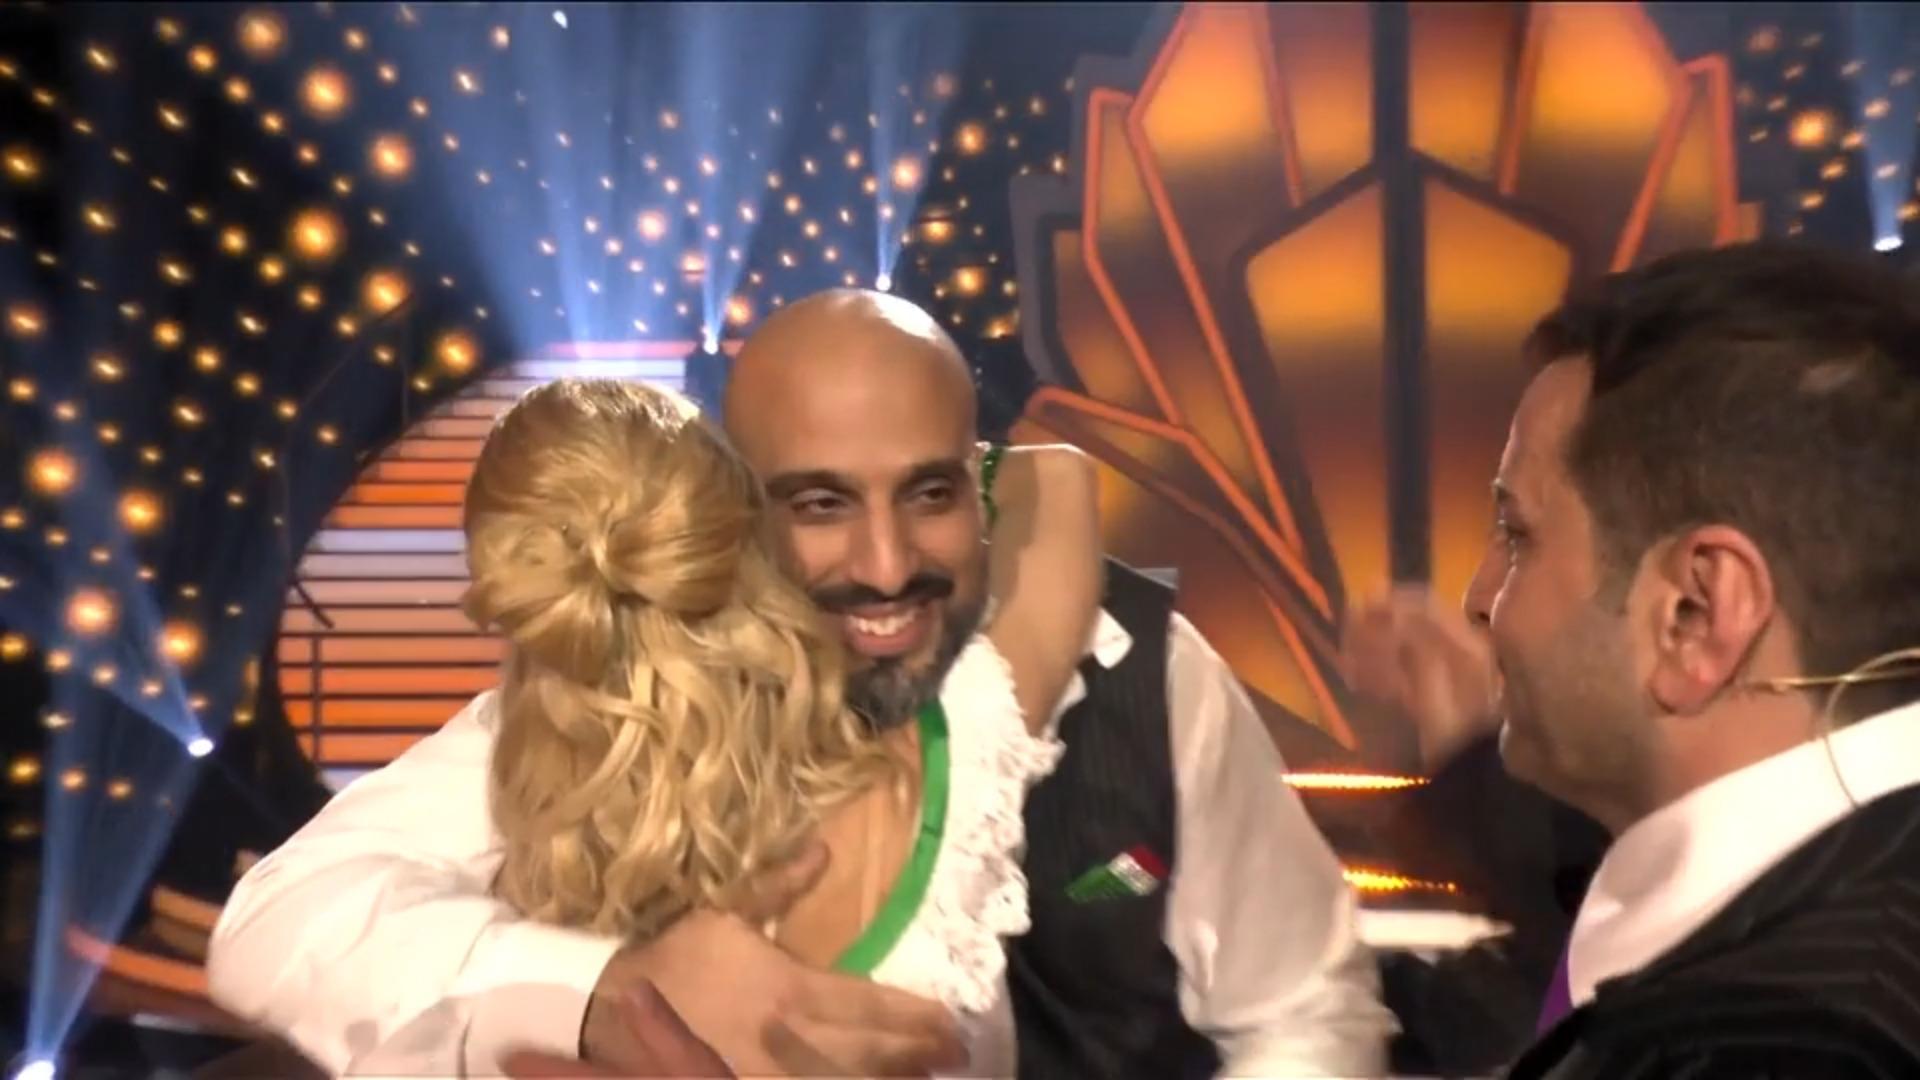 Abdul Karim: Baile después del espectáculo 2 "Vamos a bailar"-un guardia